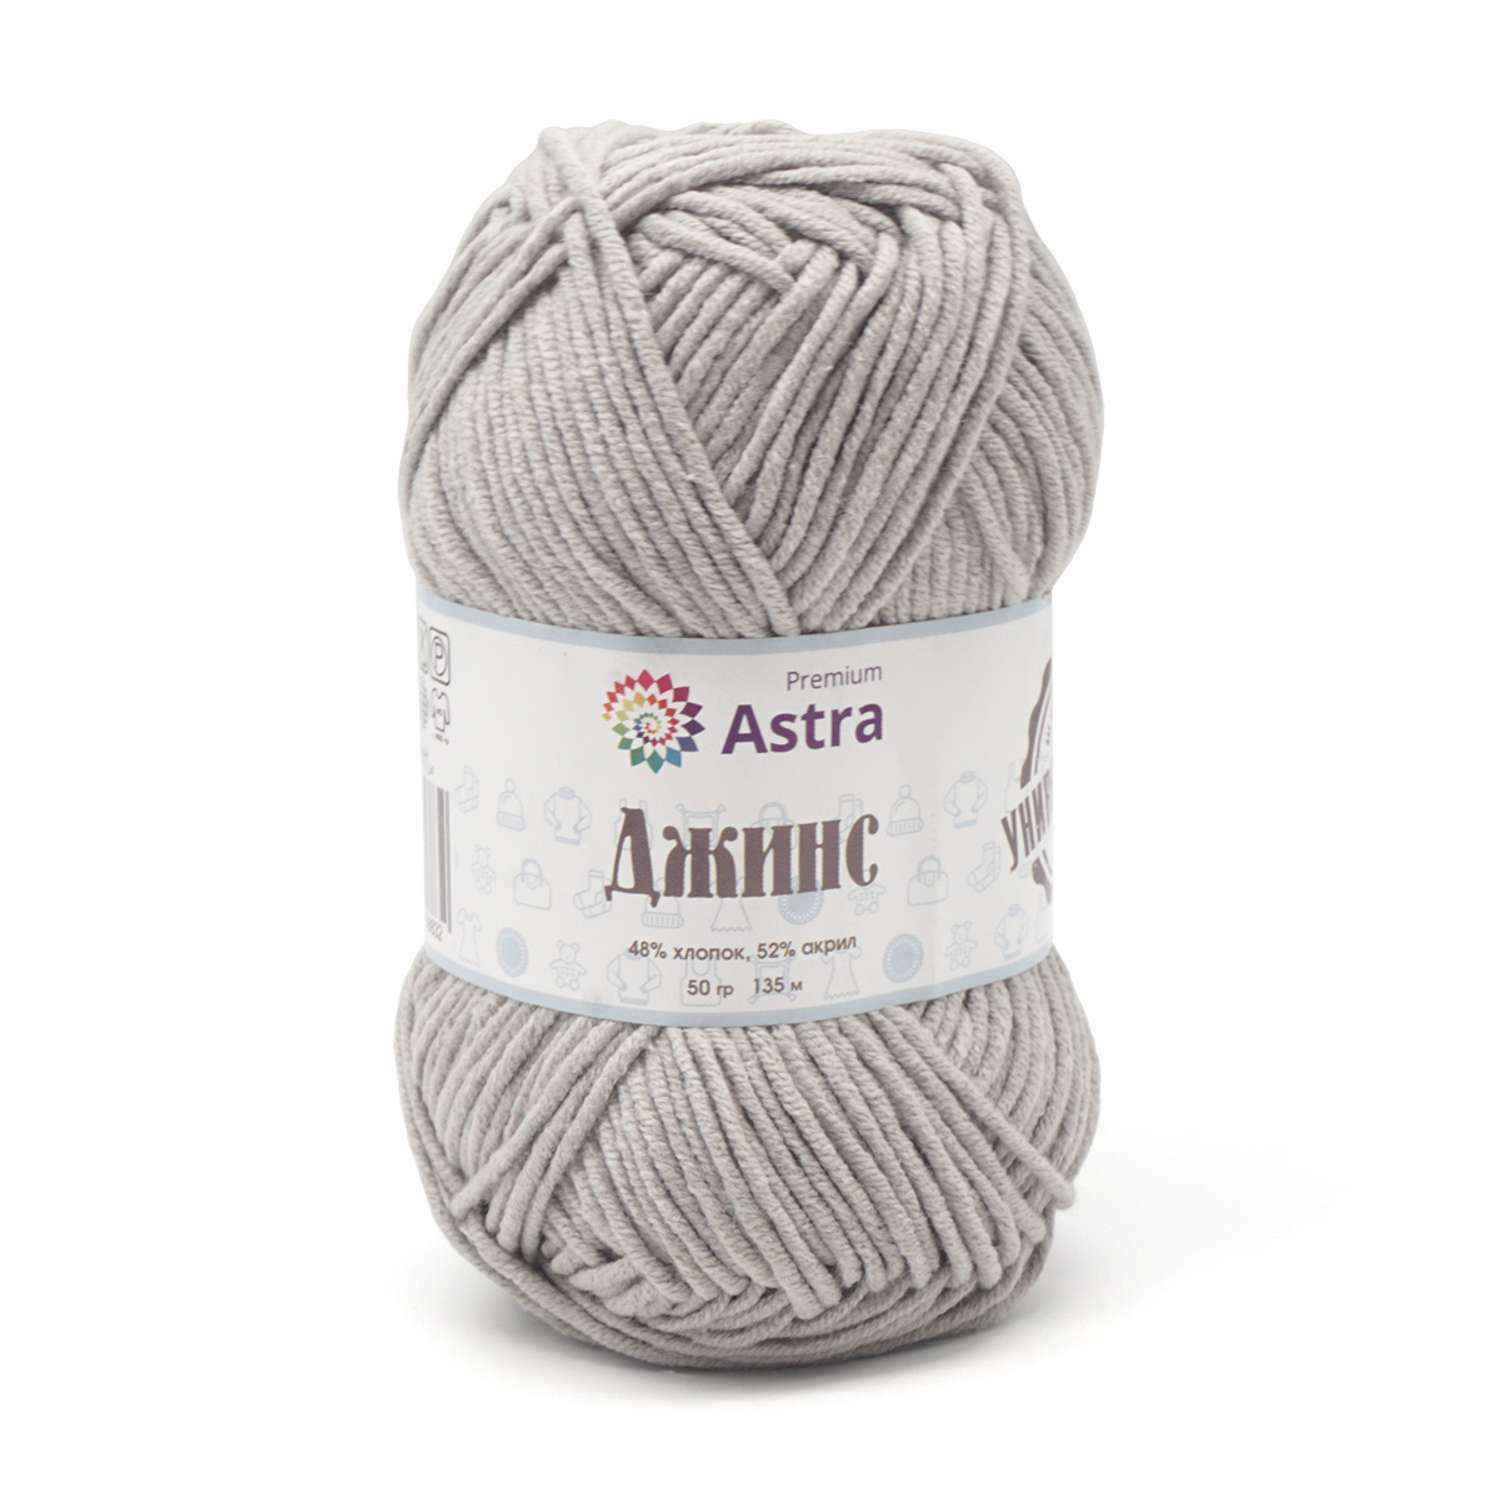 Пряжа для вязания Astra Premium джинс для повседневной одежды акрил хлопок 50 гр 135 м 910 серый 4 мотка - фото 11